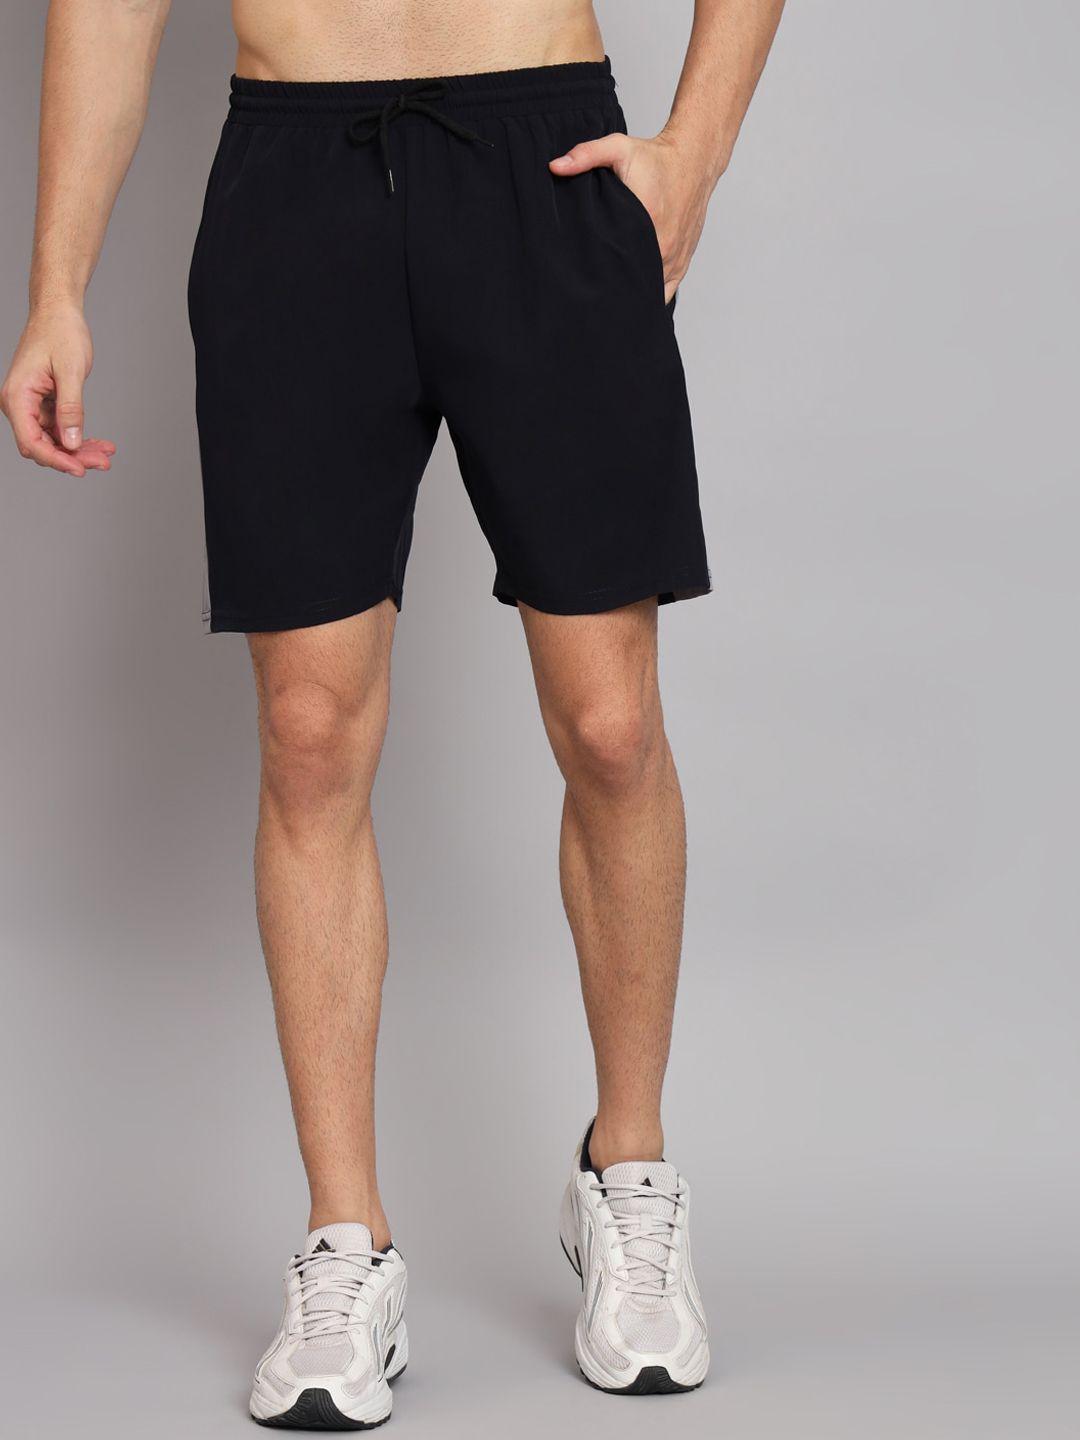 glito-men-navy-blue-training-or-gym-sports-shorts